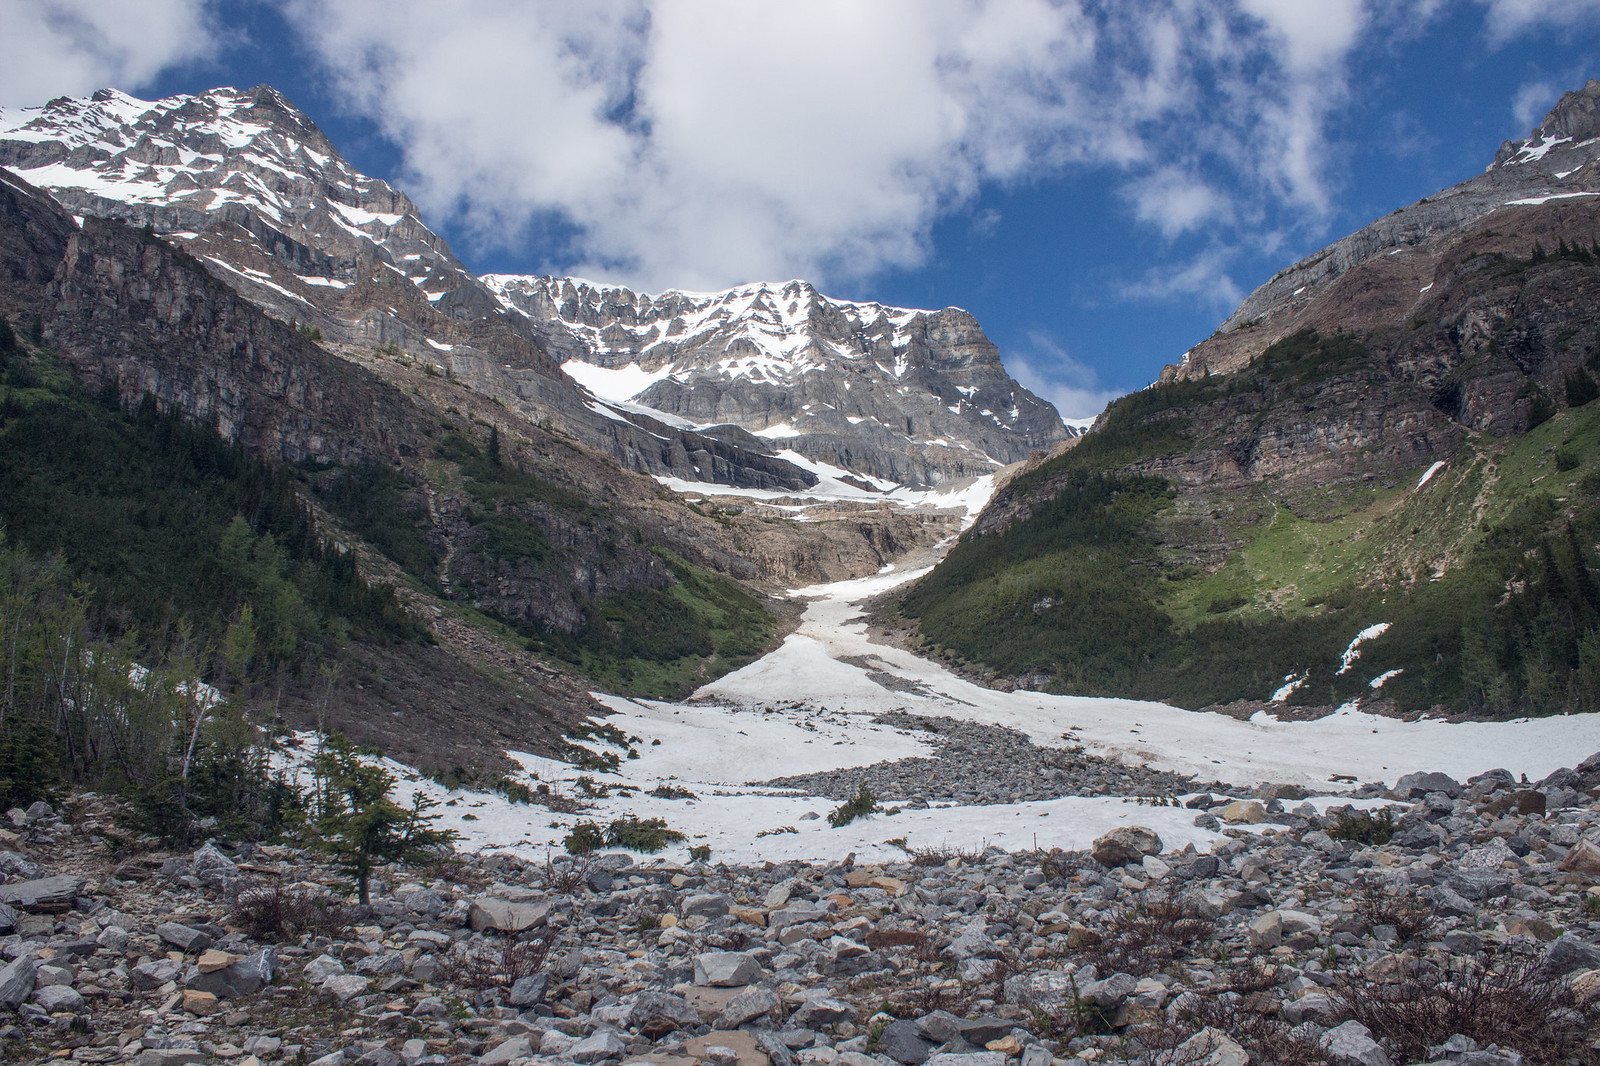 View towards the Victoria Glacier